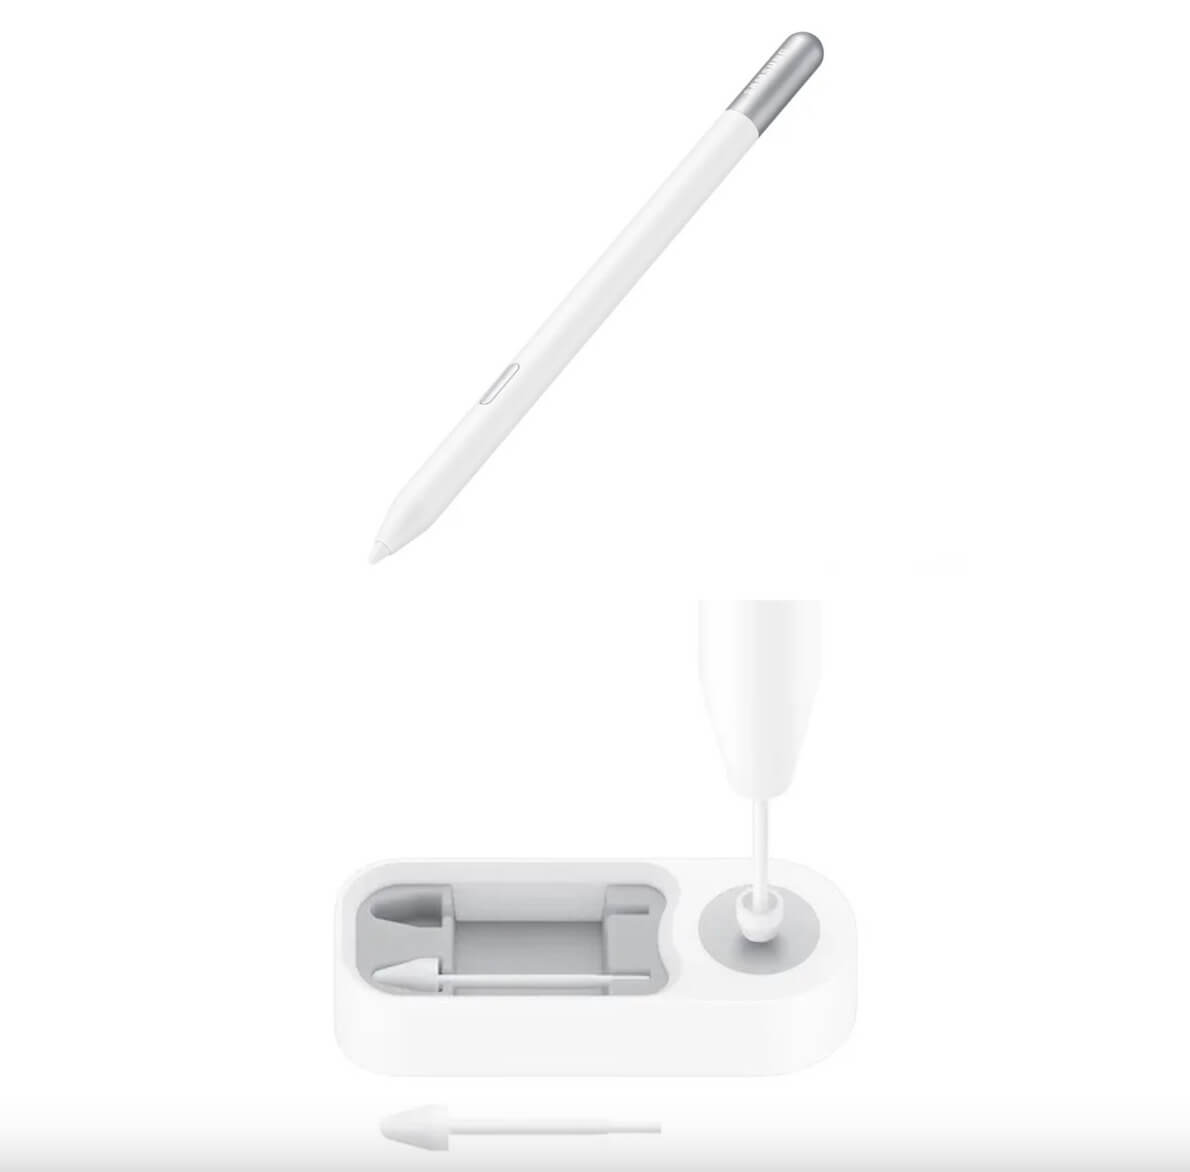 Samsung trình làng sản phẩm mới: S Pen Creator Edition